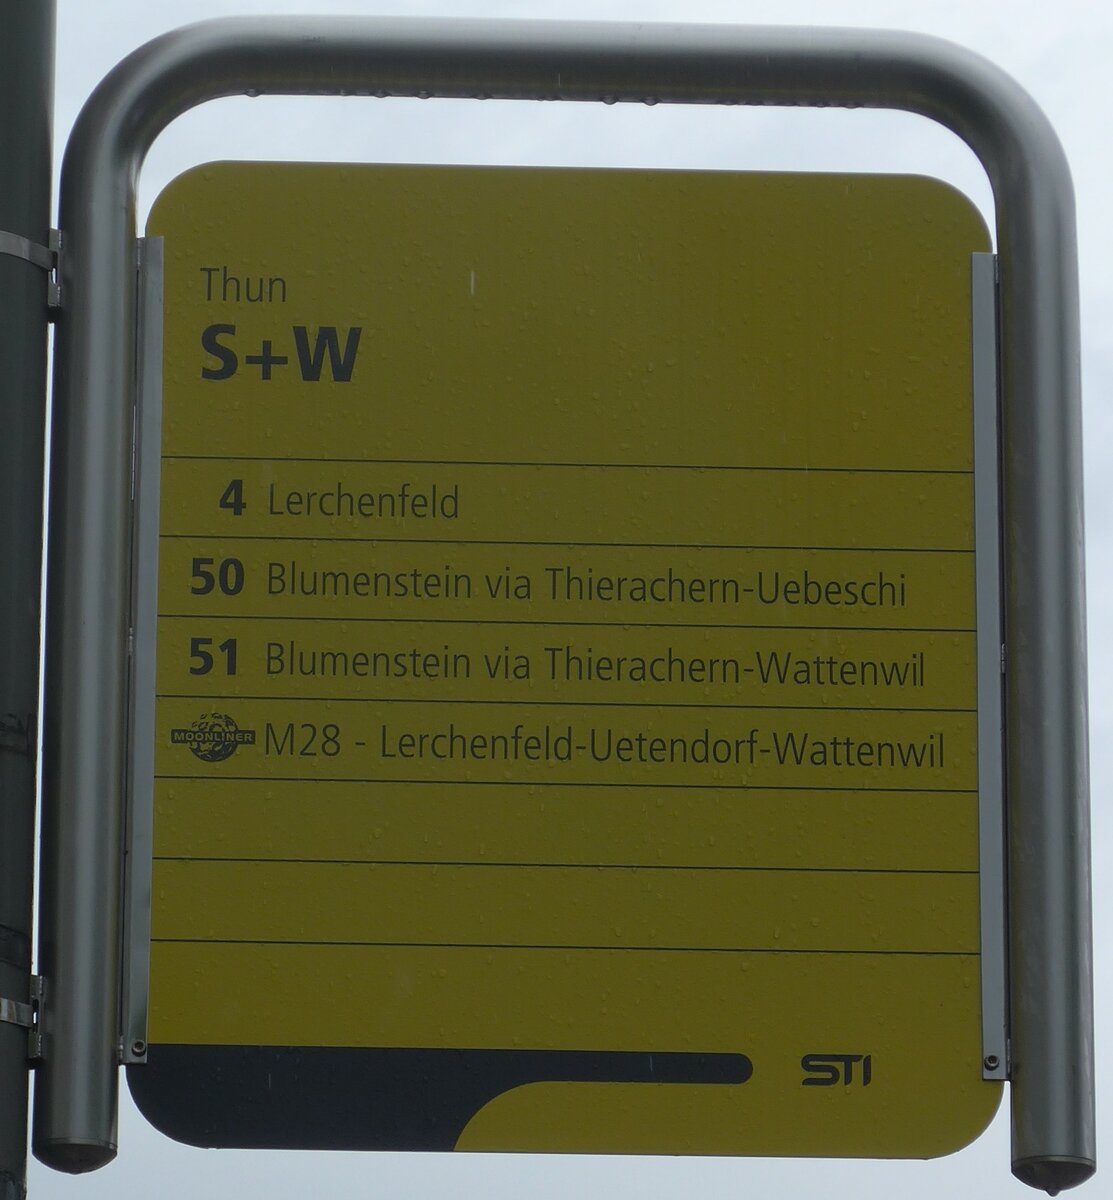 (171'920) - STI-Haltestellenschild - Thun, S+W - am 19. Juni 2016